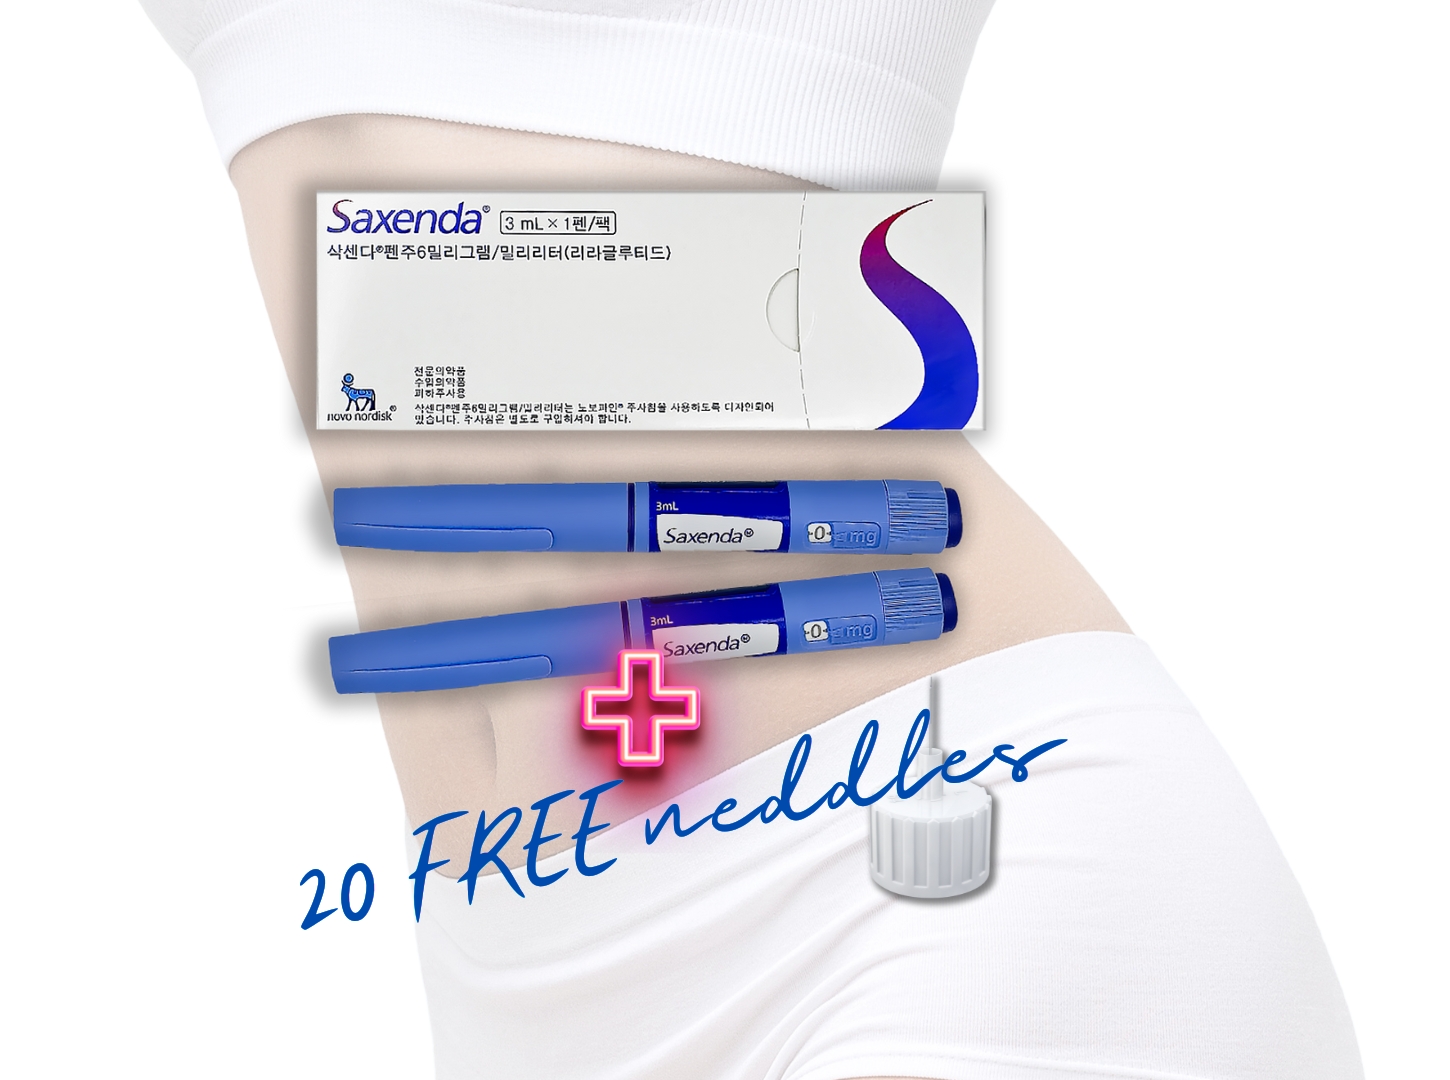 Saxenda X2 Free needles Banner